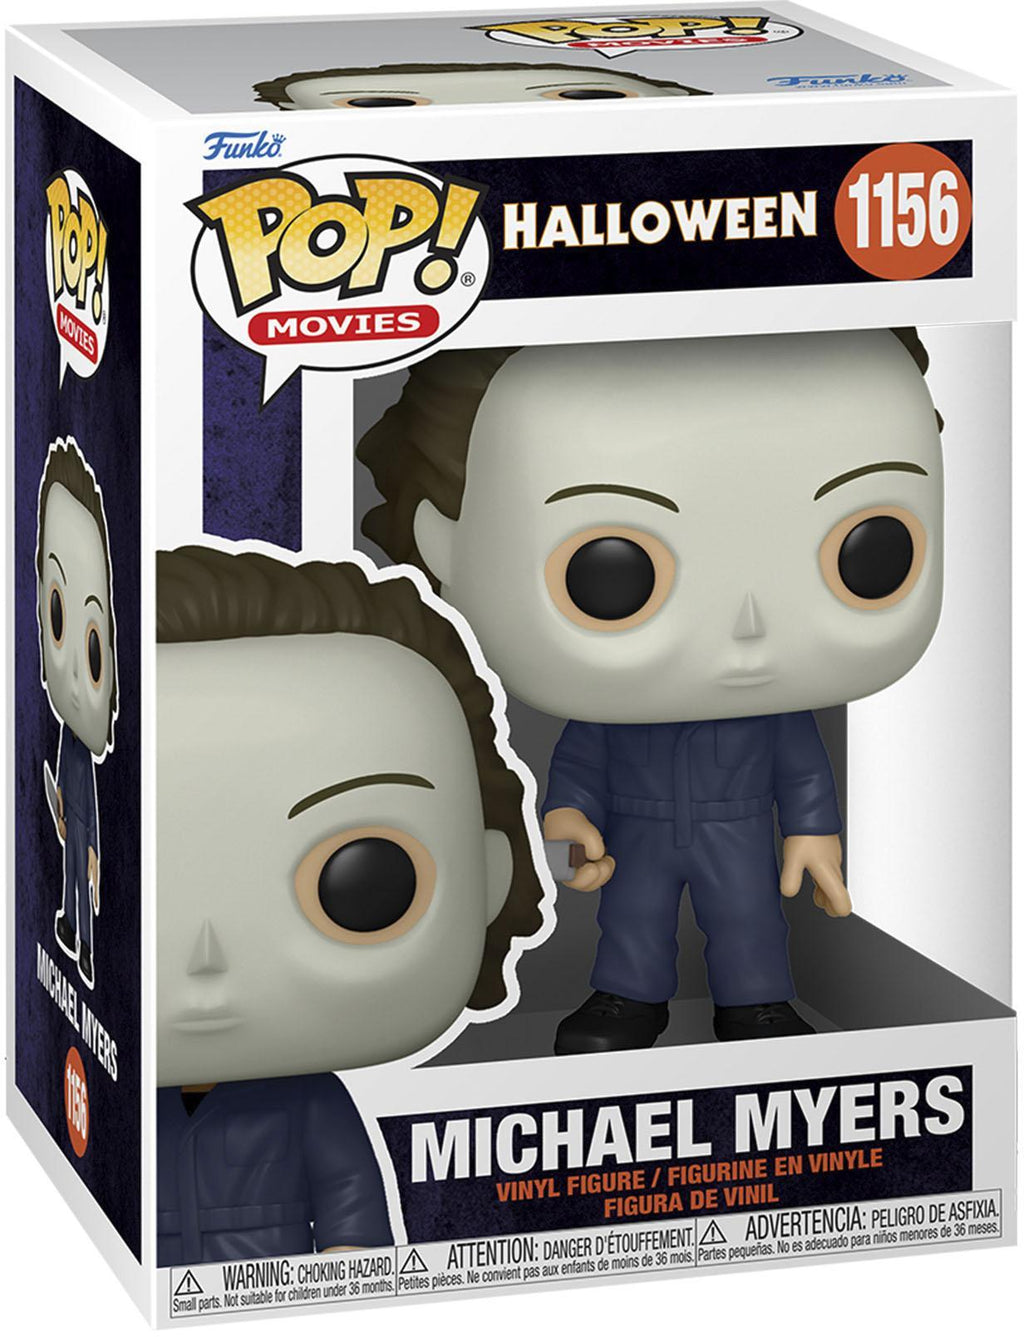 Pop Halloween Michael Myers Vinyl Figure #1156